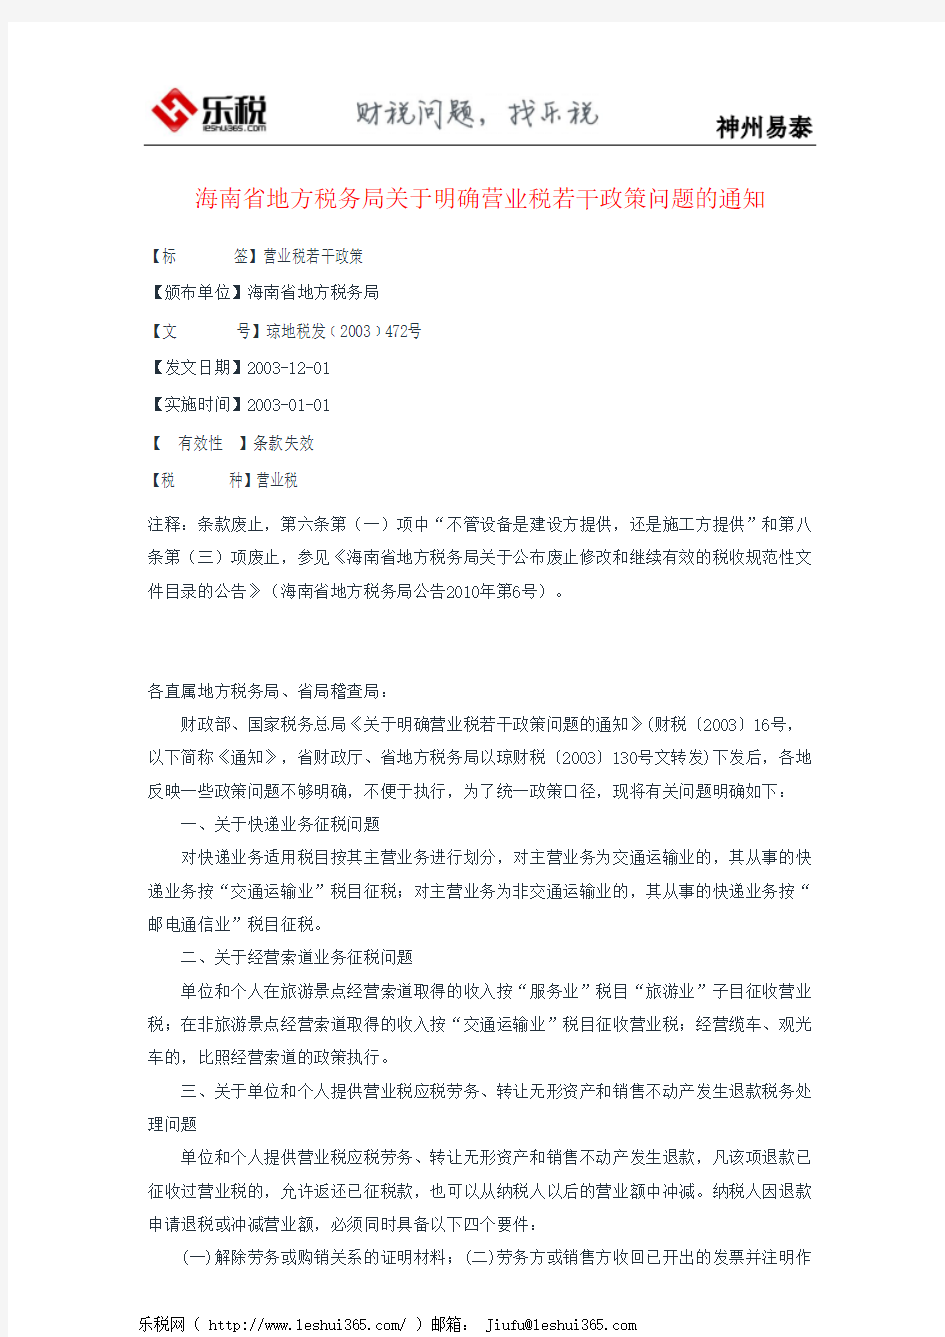 海南省地方税务局关于明确营业税若干政策问题的通知